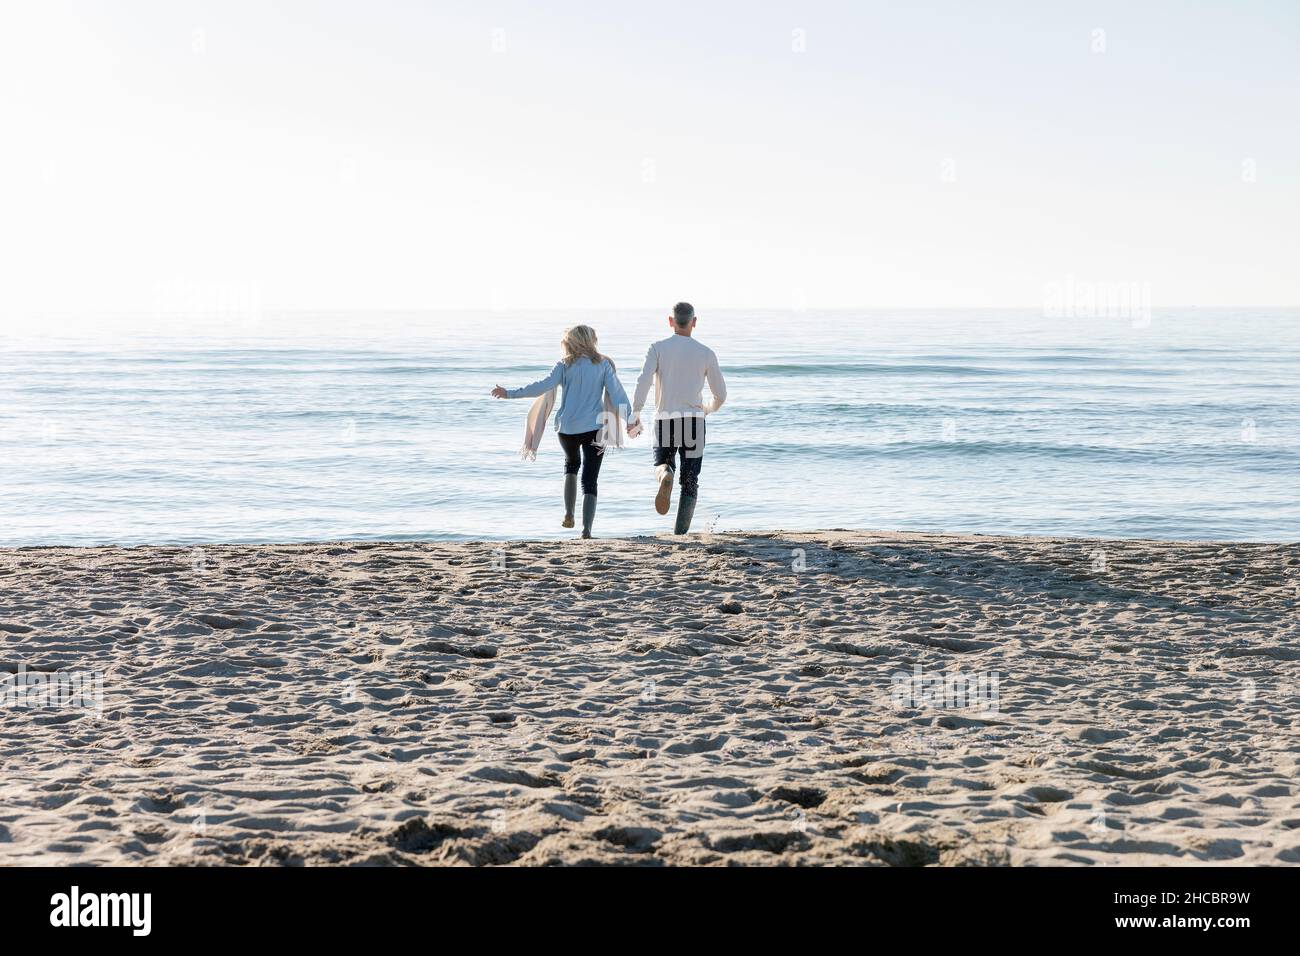 Man and woman running towards sea at beach Stock Photo